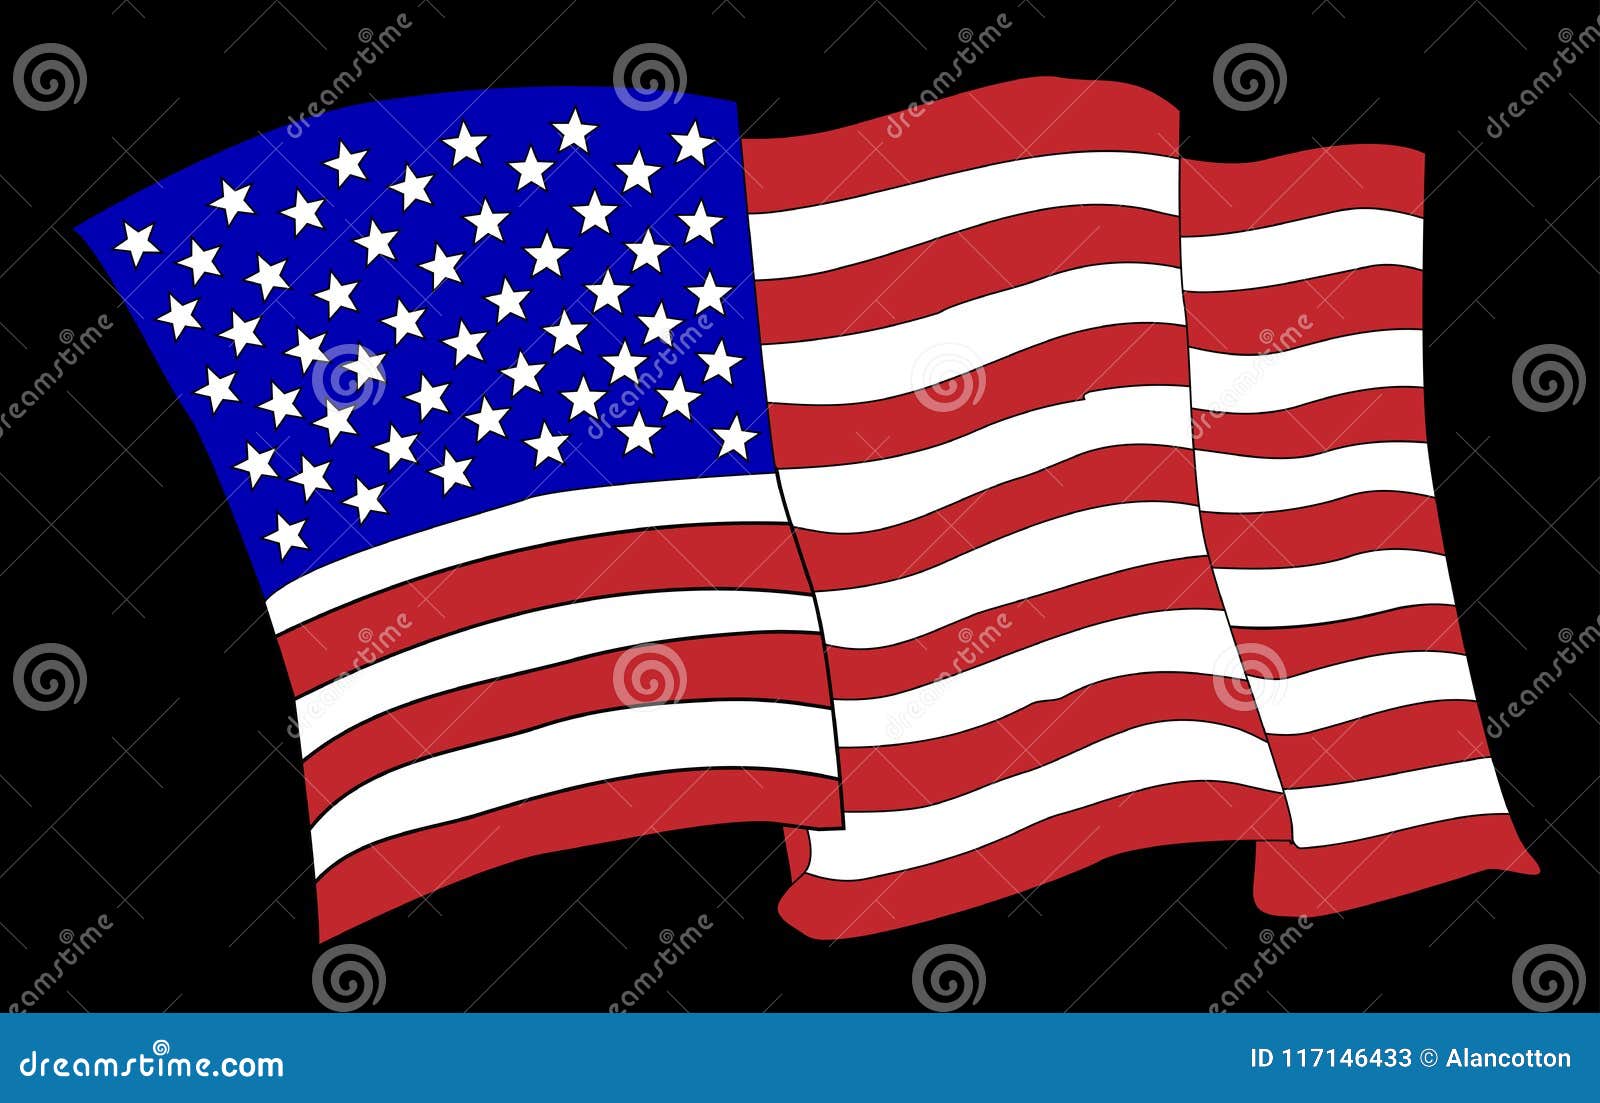 American Flag Cartoon Waving Stock Illustrations – 1,999 American Flag  Cartoon Waving Stock Illustrations, Vectors & Clipart - Dreamstime